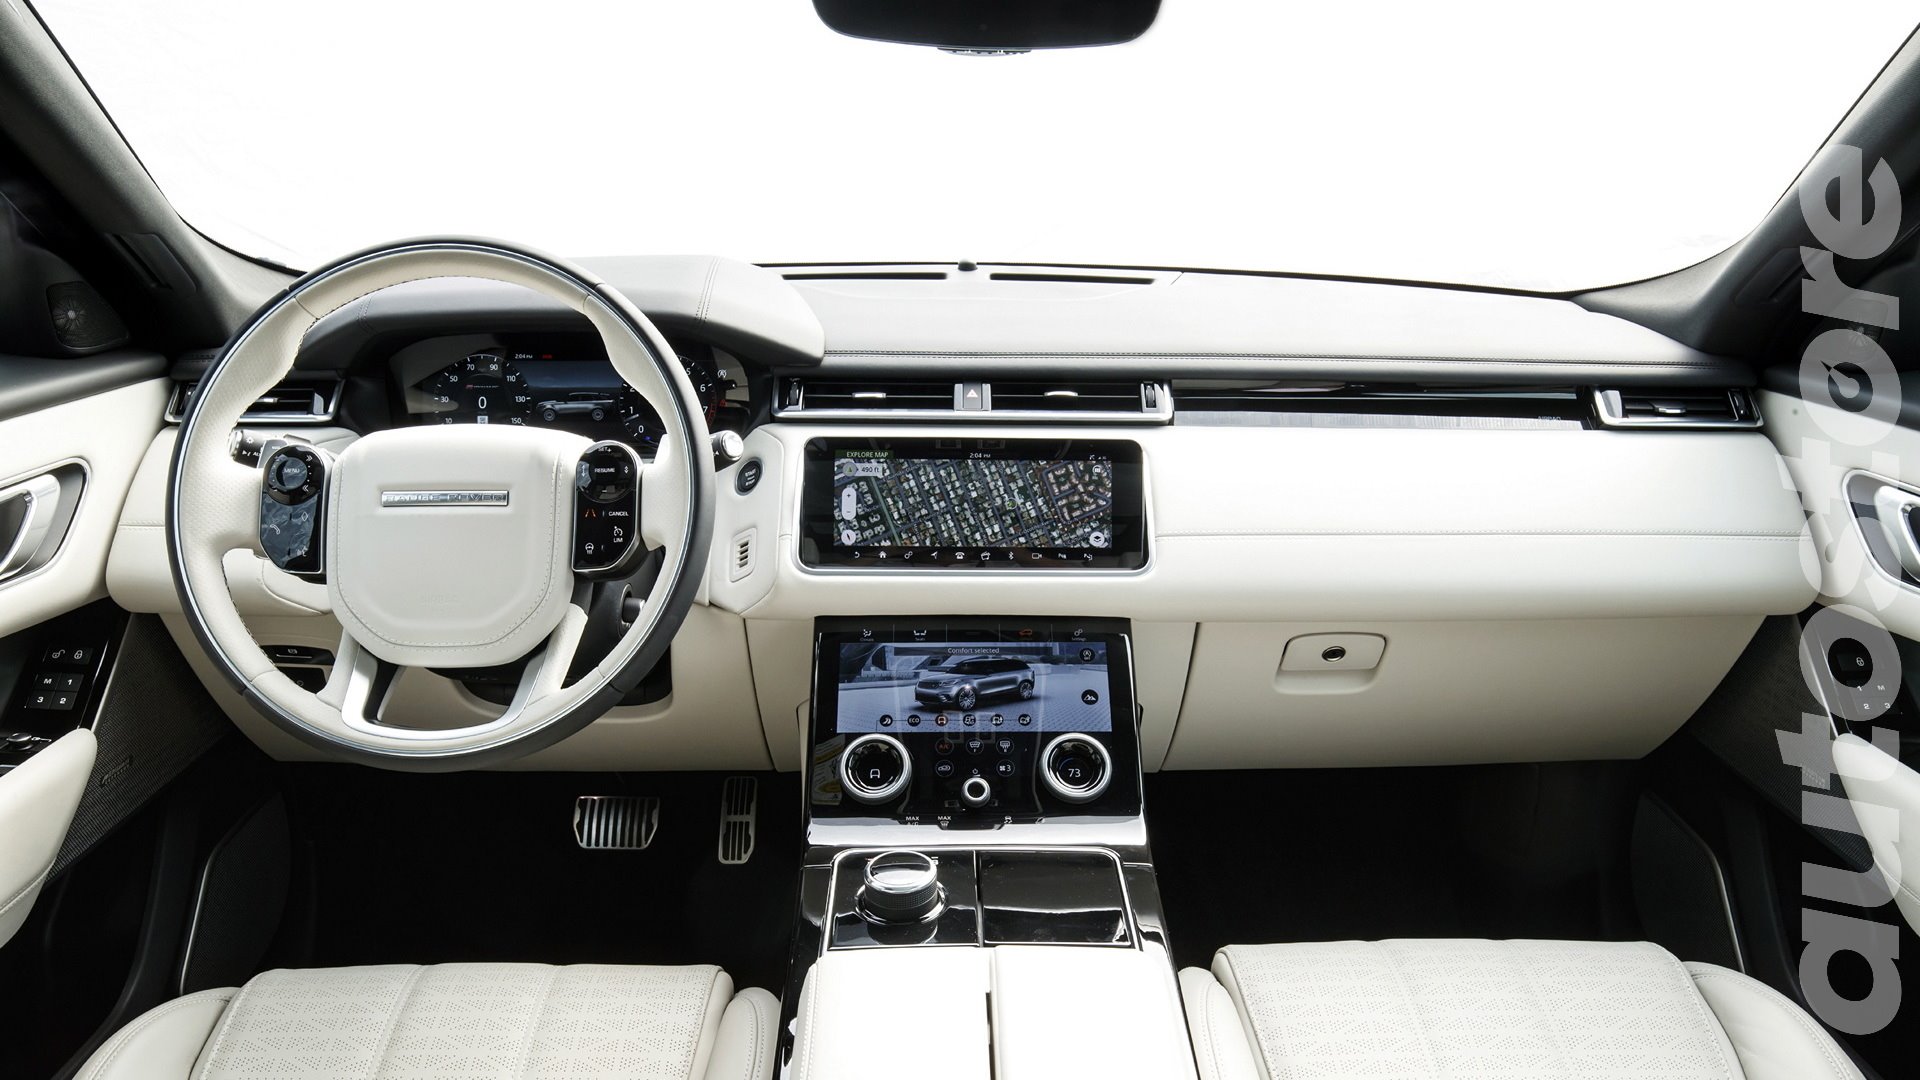 AutoStrore Range Rover Velar - 06